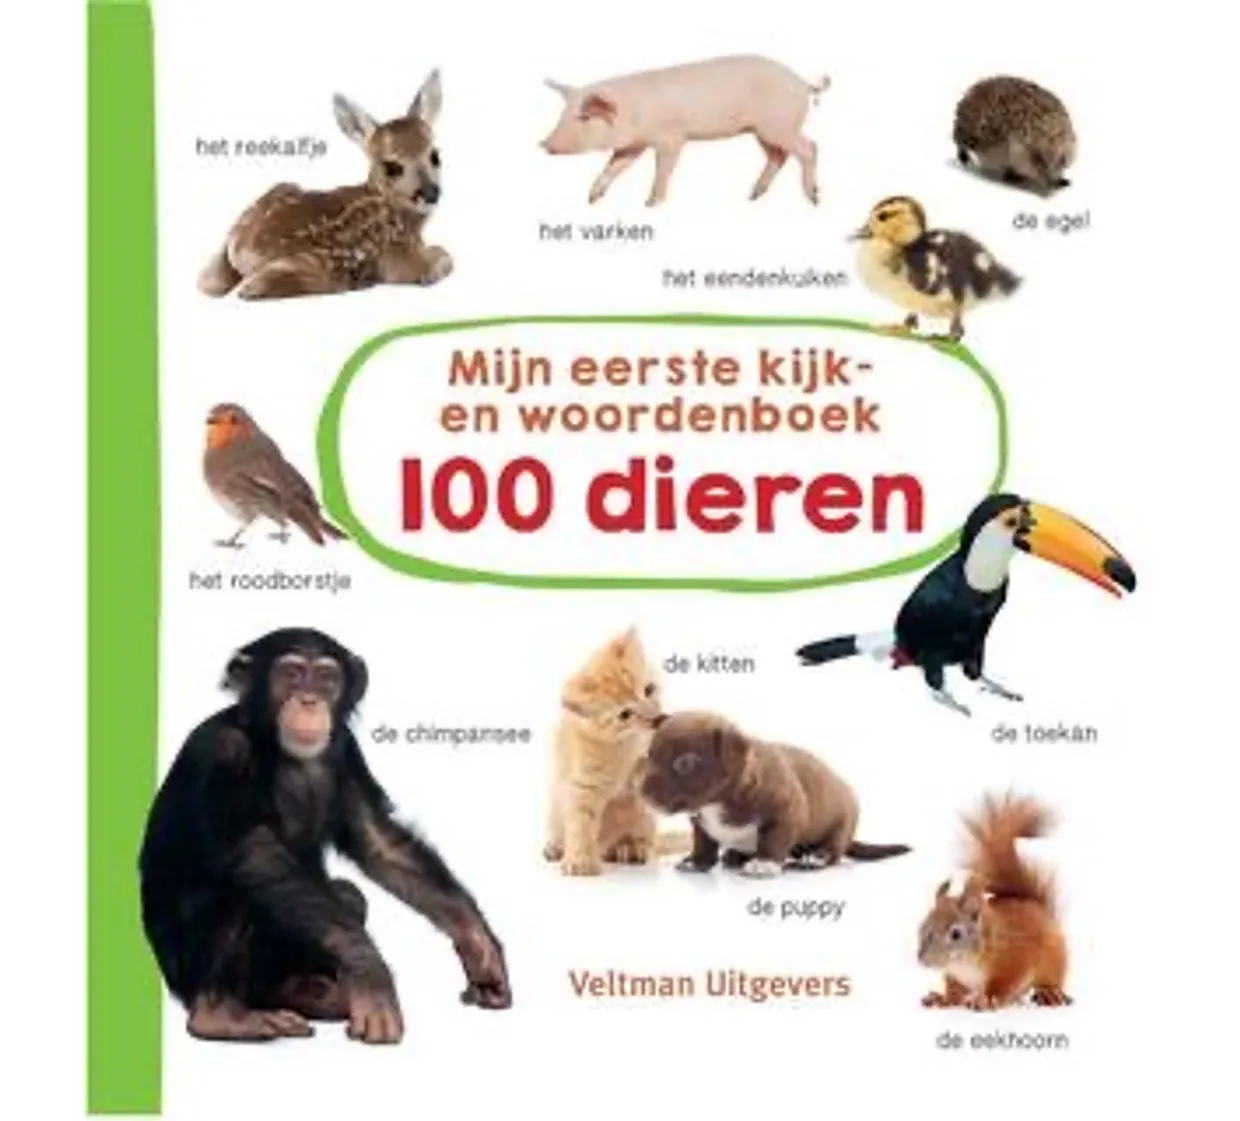 Mijn eerste kijk-en woordenboek: 100 dieren